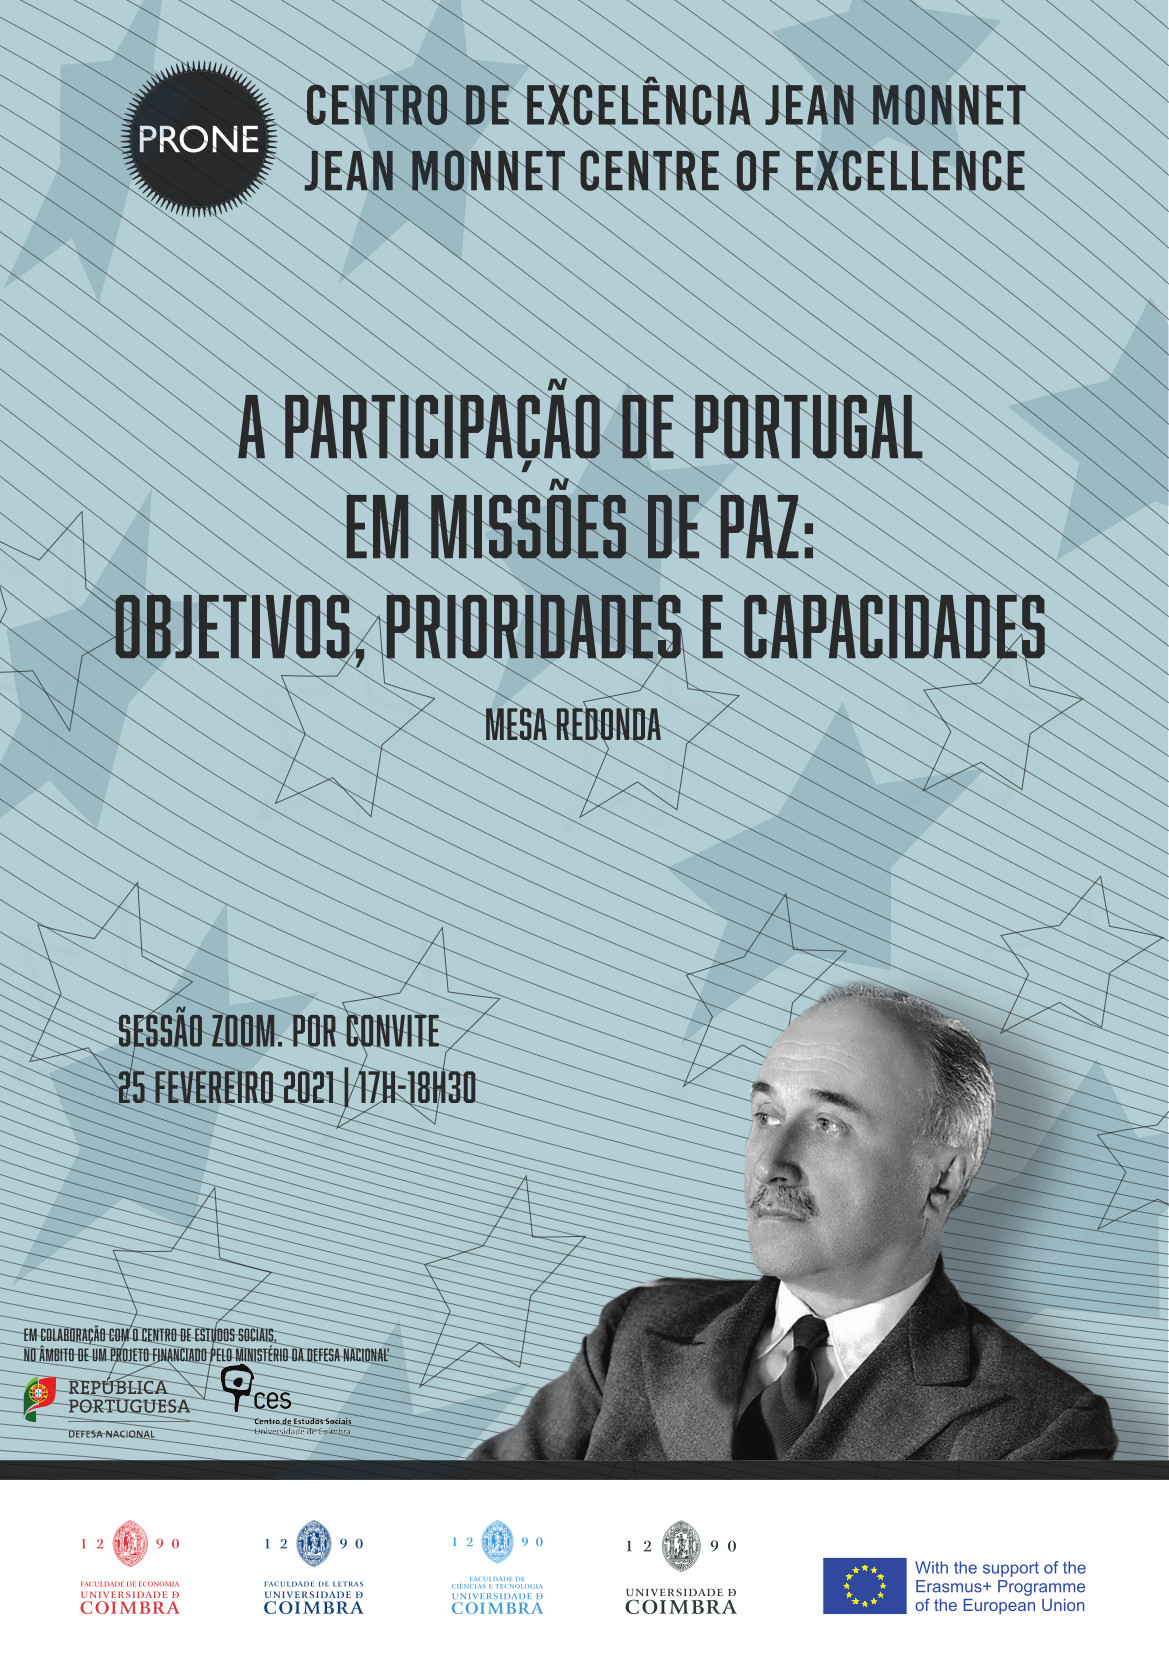 A Participação de Portugal em Missões de Paz: Objetivos, Prioridades e Capacidades<span id="edit_32532"><script>$(function() { $('#edit_32532').load( "/myces/user/editobj.php?tipo=evento&id=32532" ); });</script></span>